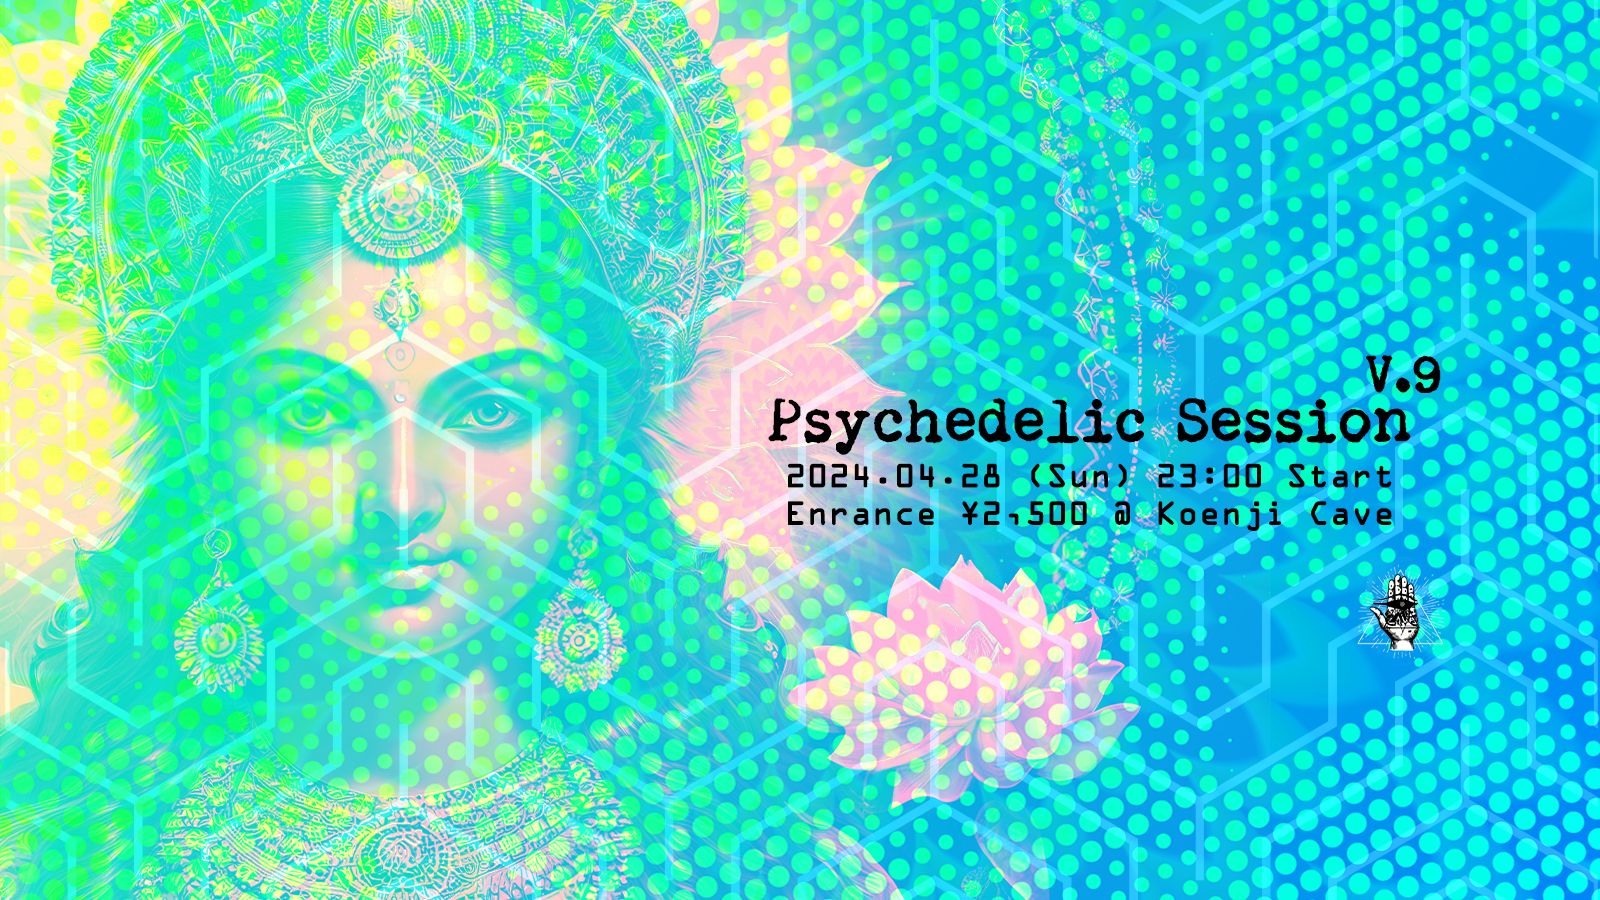 Psychedelic Session V.9